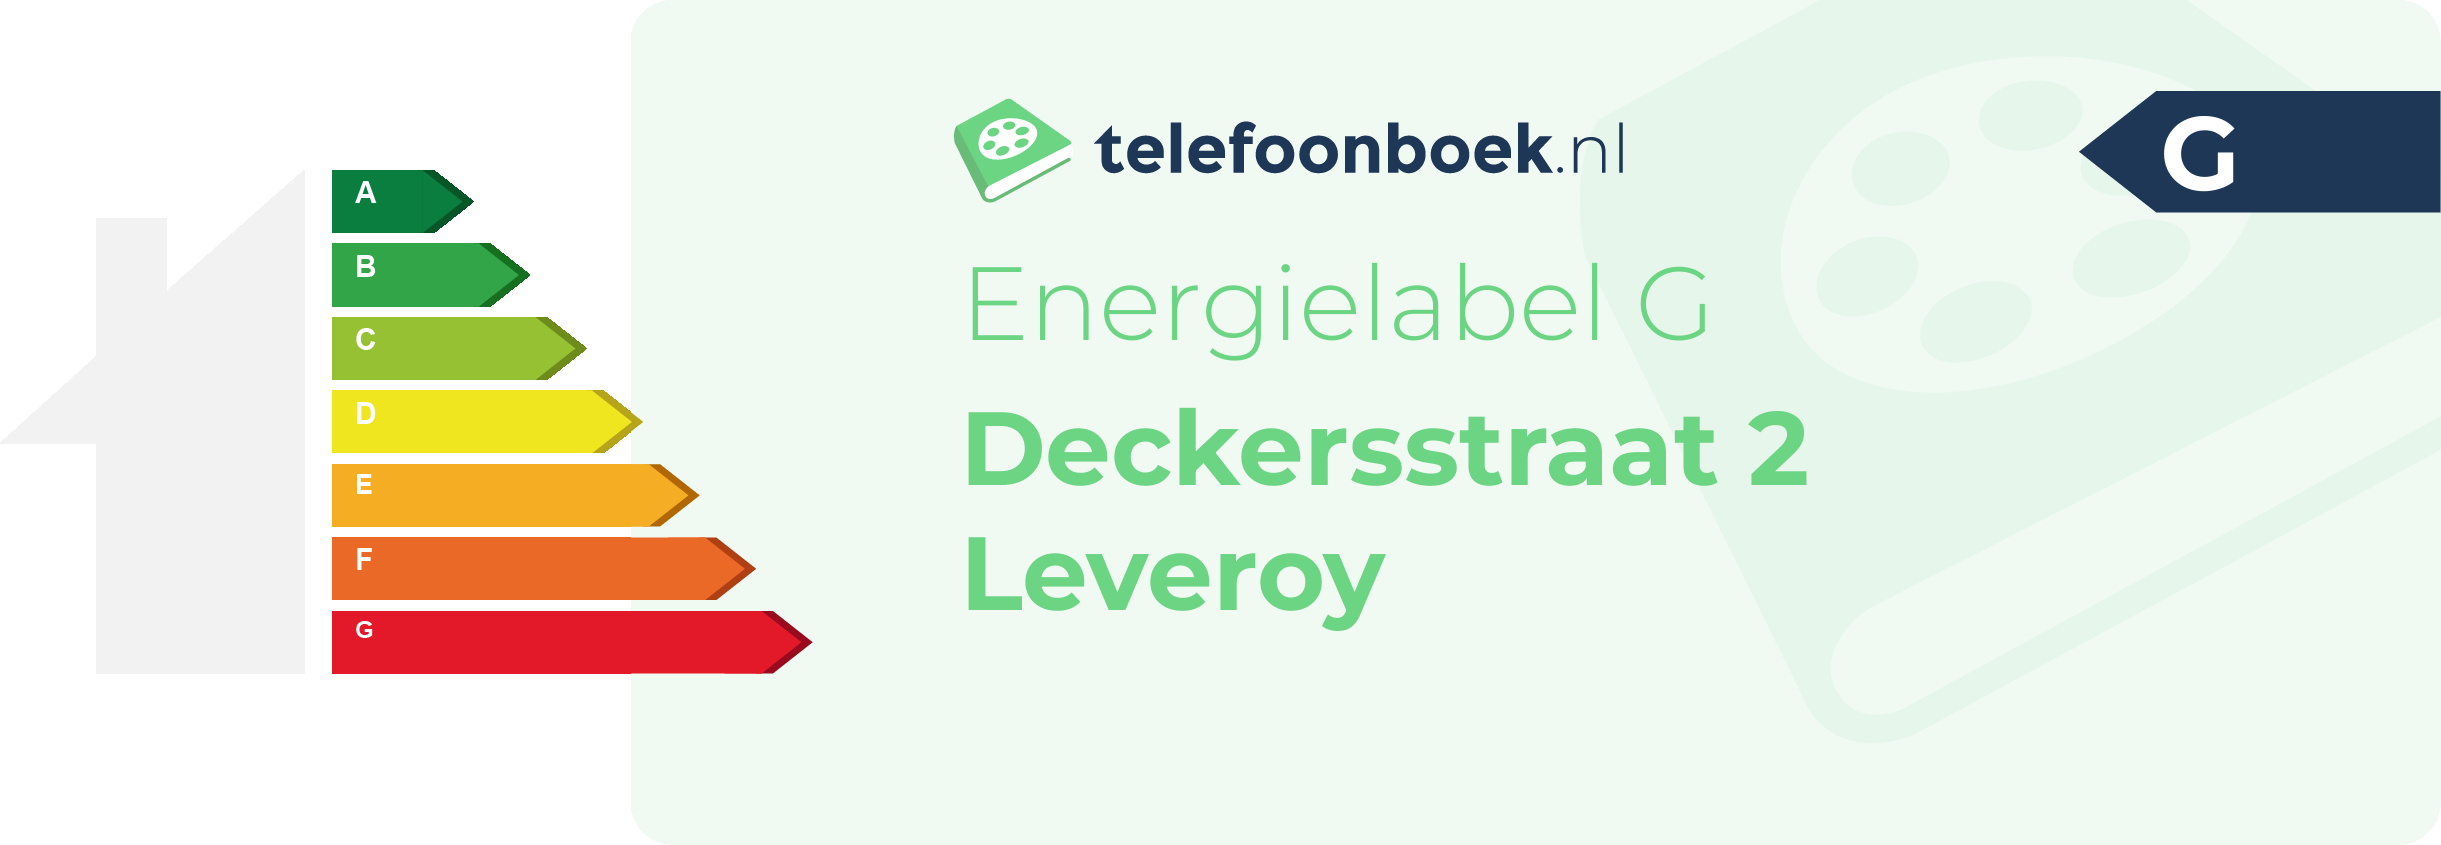 Energielabel Deckersstraat 2 Leveroy